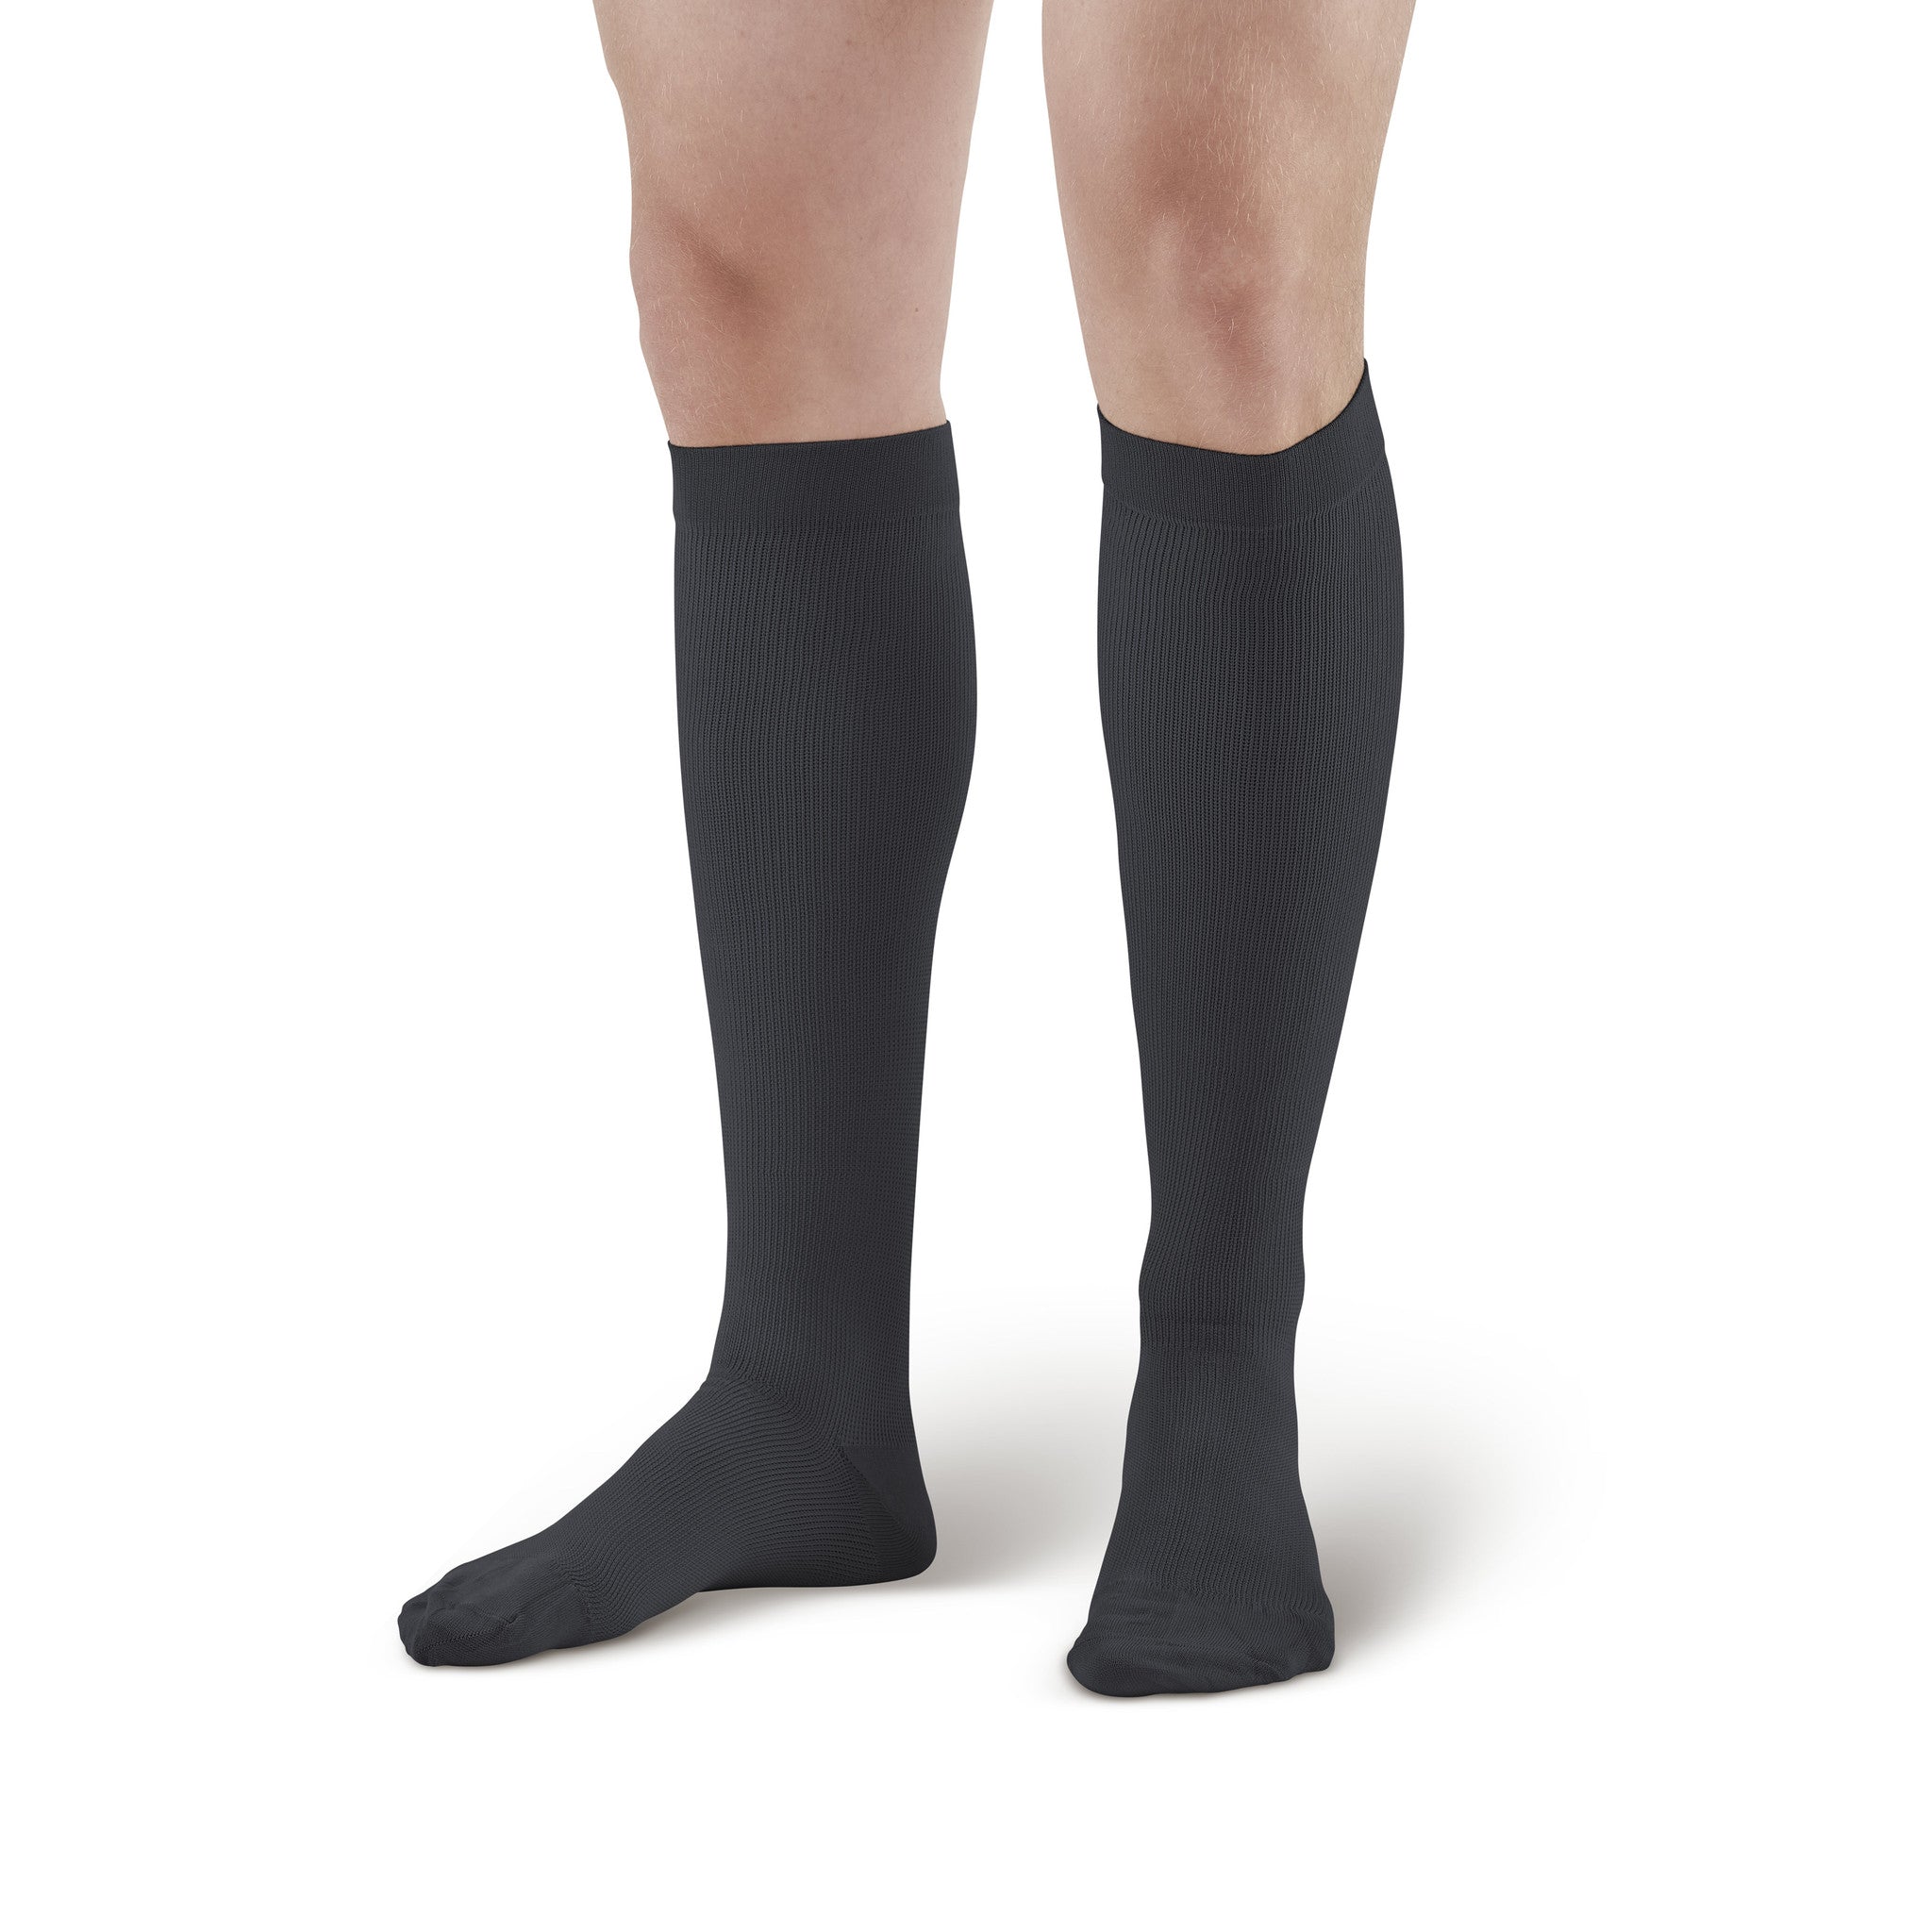 AW Style 126 Men's Microfiber Knee High Socks 30-40 mmHg